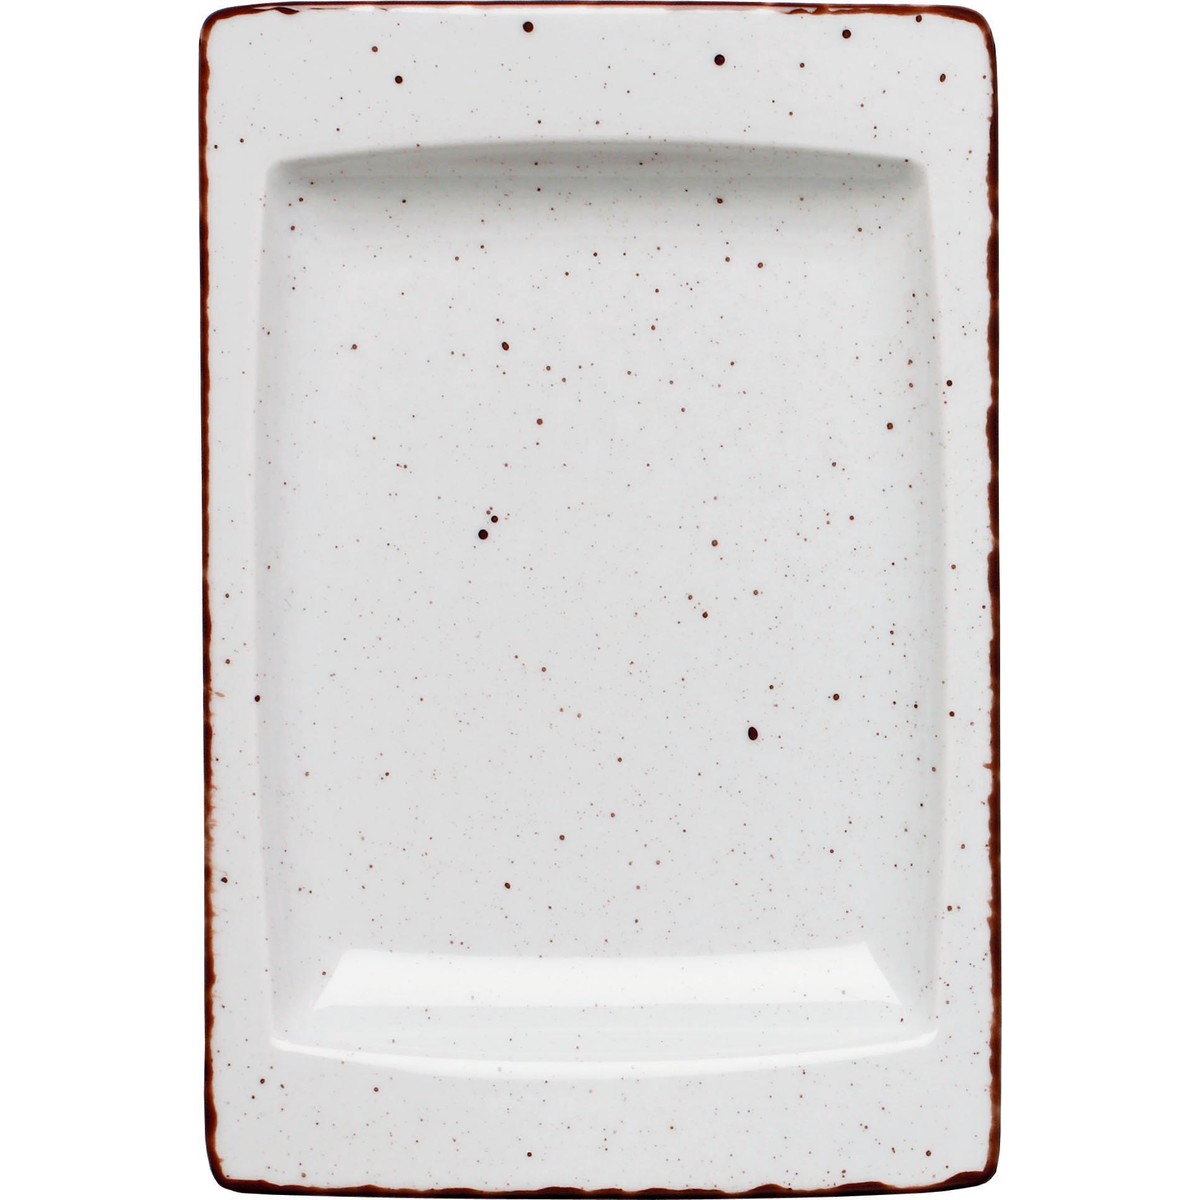 Porzellanserie "Granja" weiß Platte flach eckig, 18x12 cm